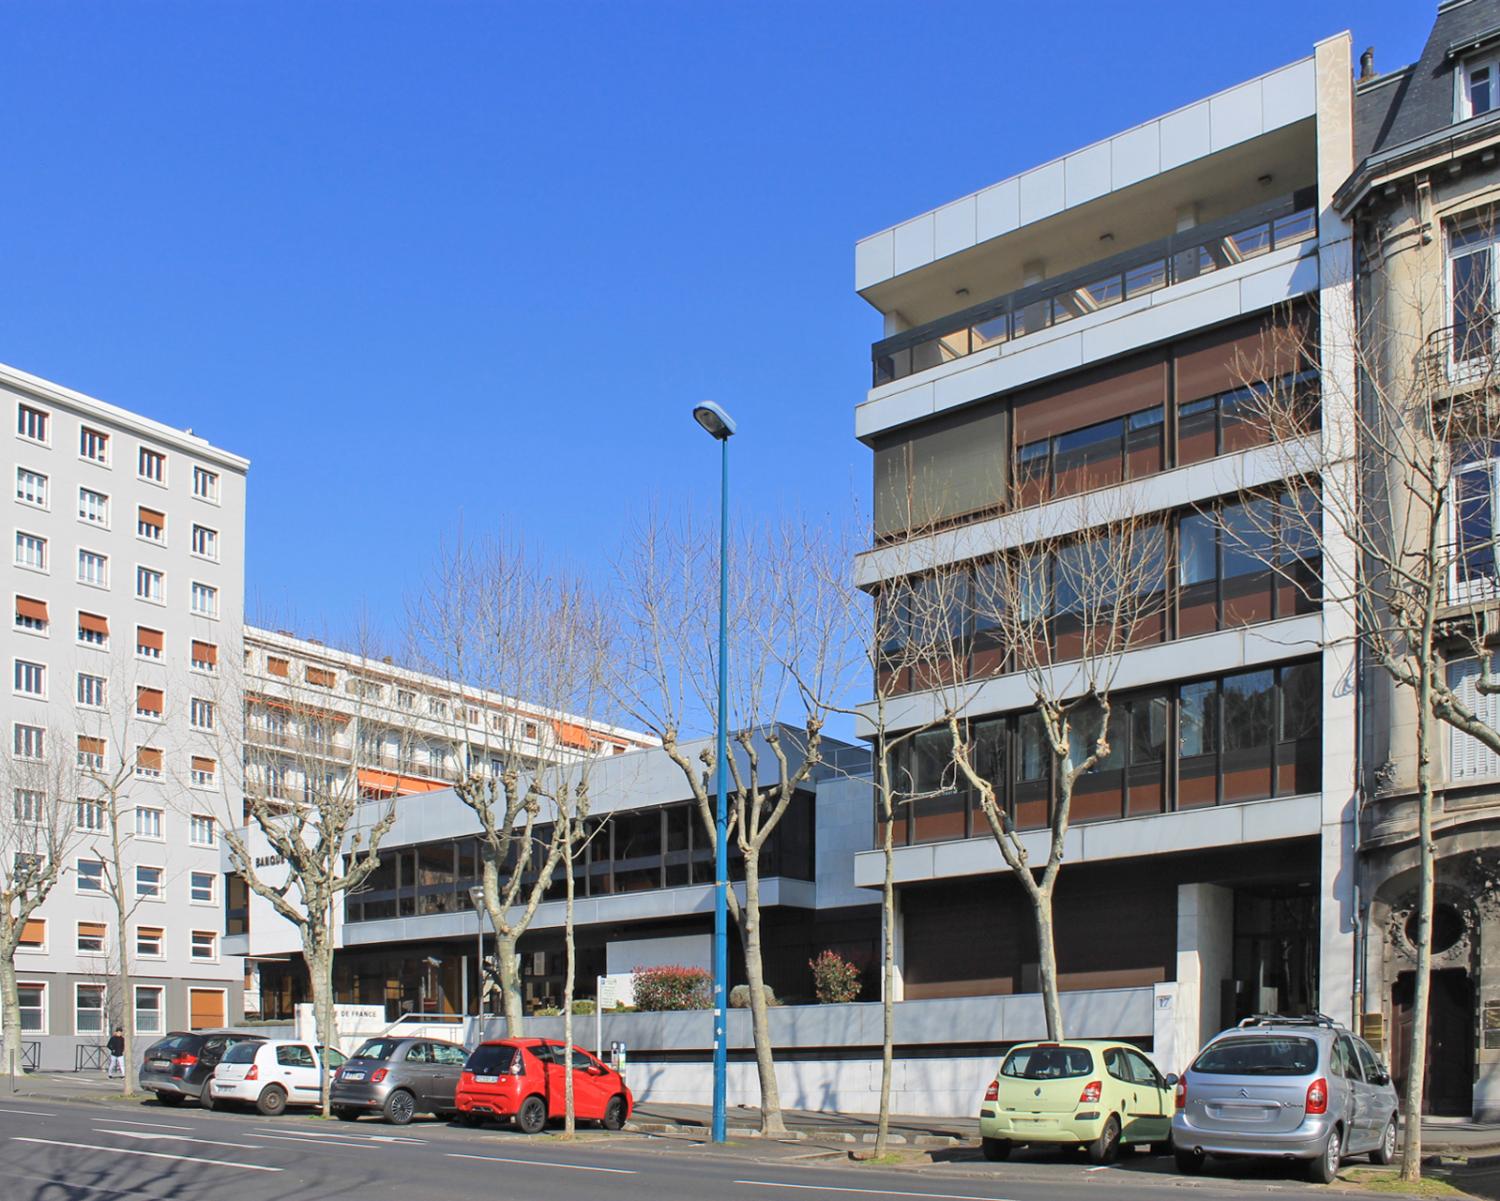 La succursale de la Banque de France à Clermont-Ferrand